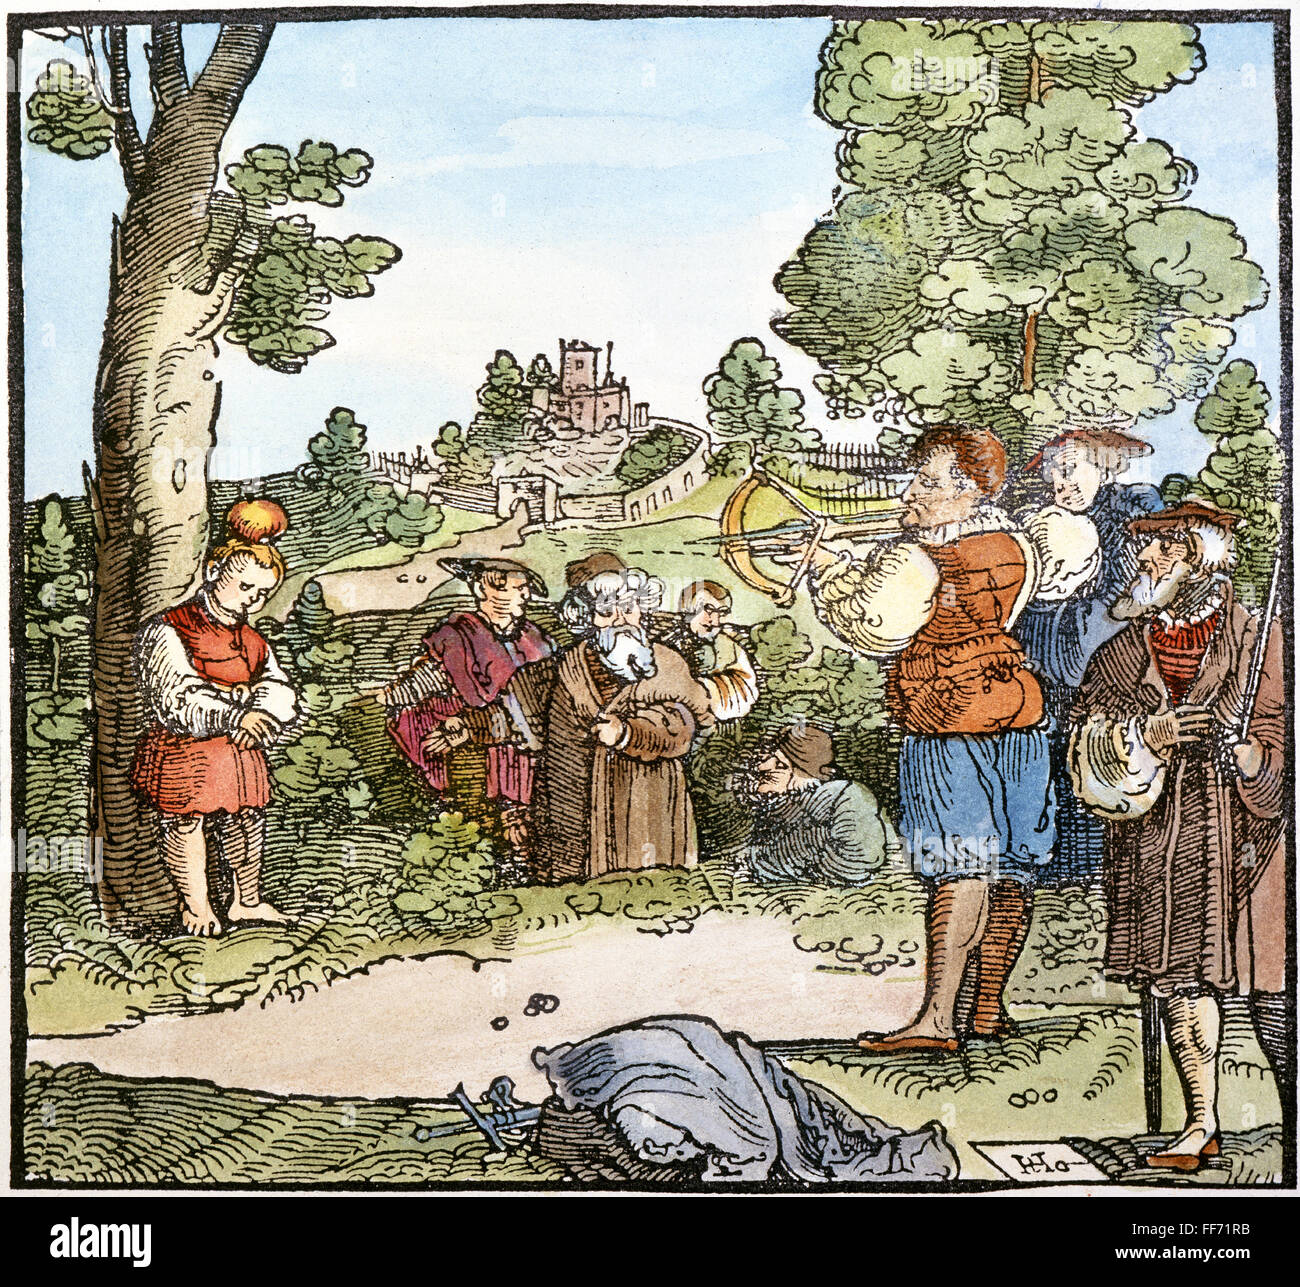 Guglielmo Tell. /NLegendary eroe svizzero. Guglielmo Tell e la mela. Tedesco o colore svizzero xilografia, del XVI secolo. Foto Stock